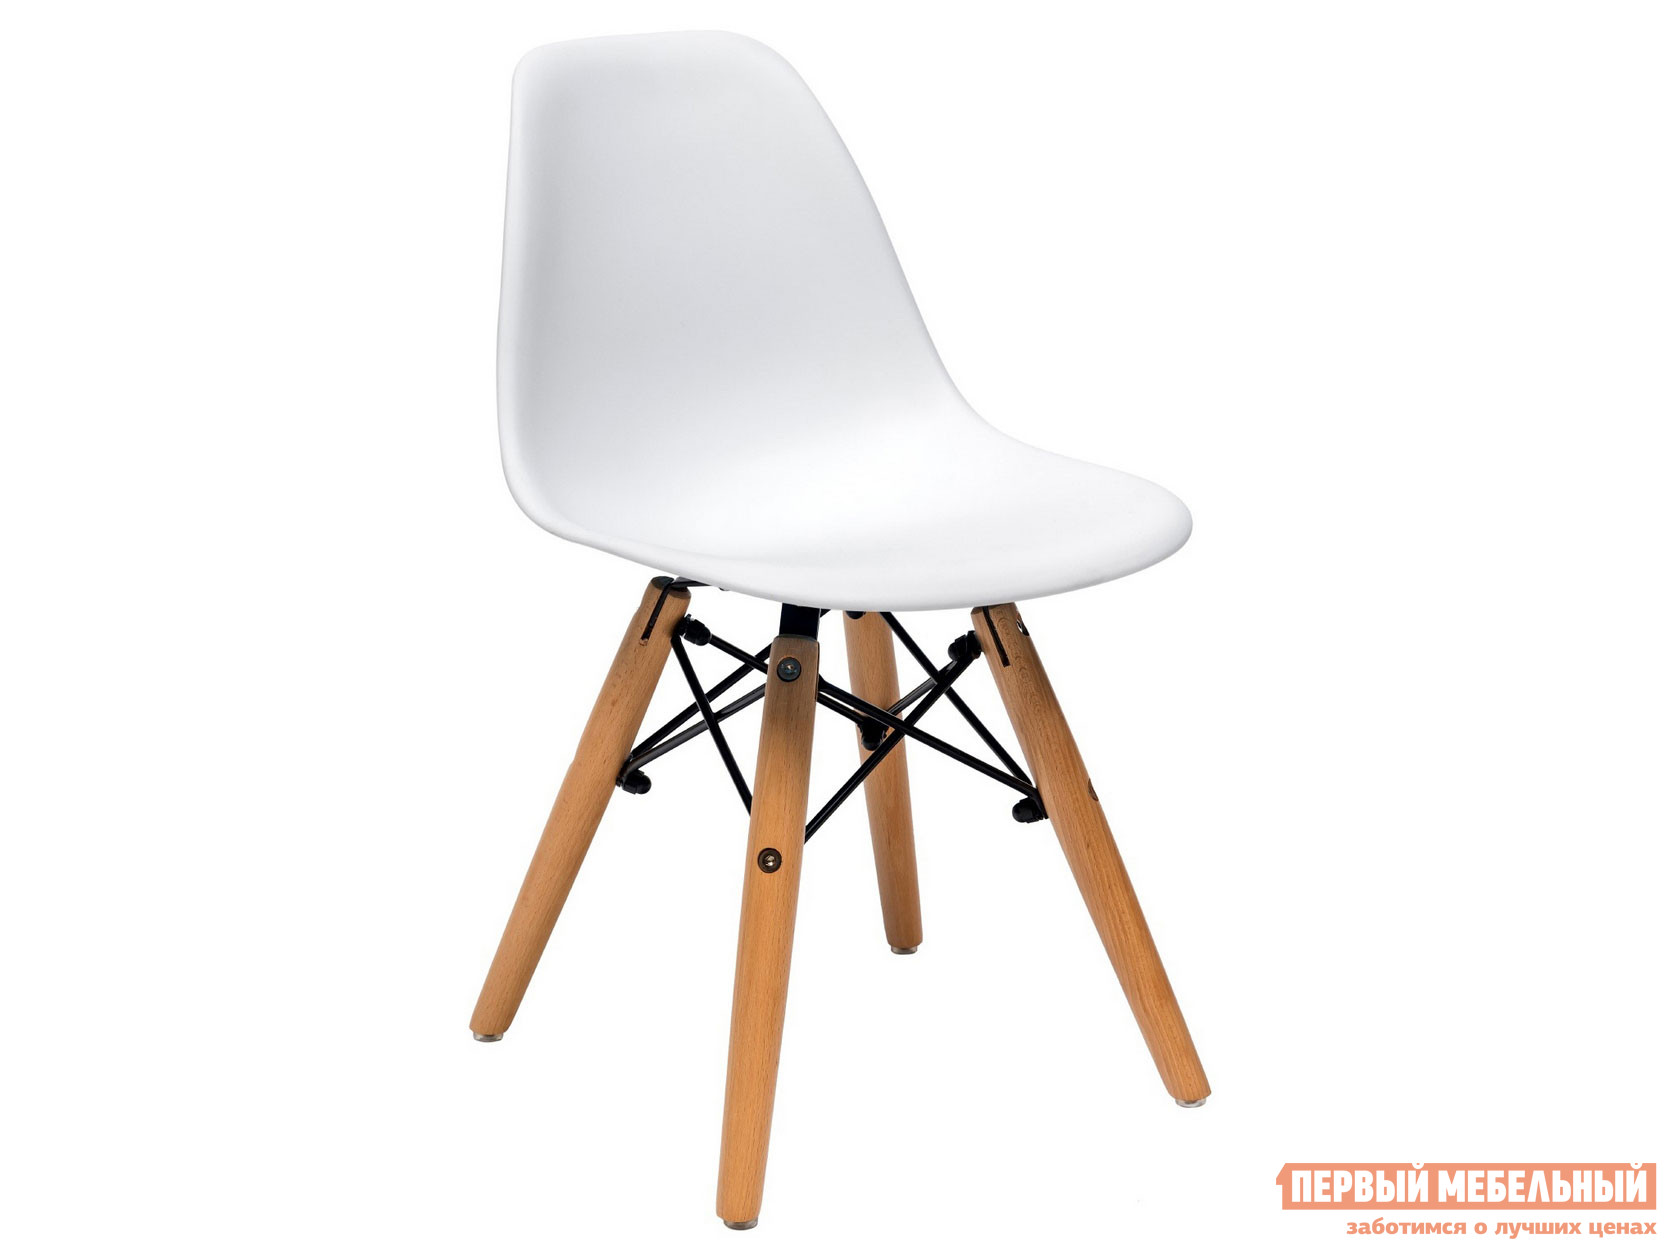 Столик и стульчик  Имс 8056 Белый от Первый Мебельный